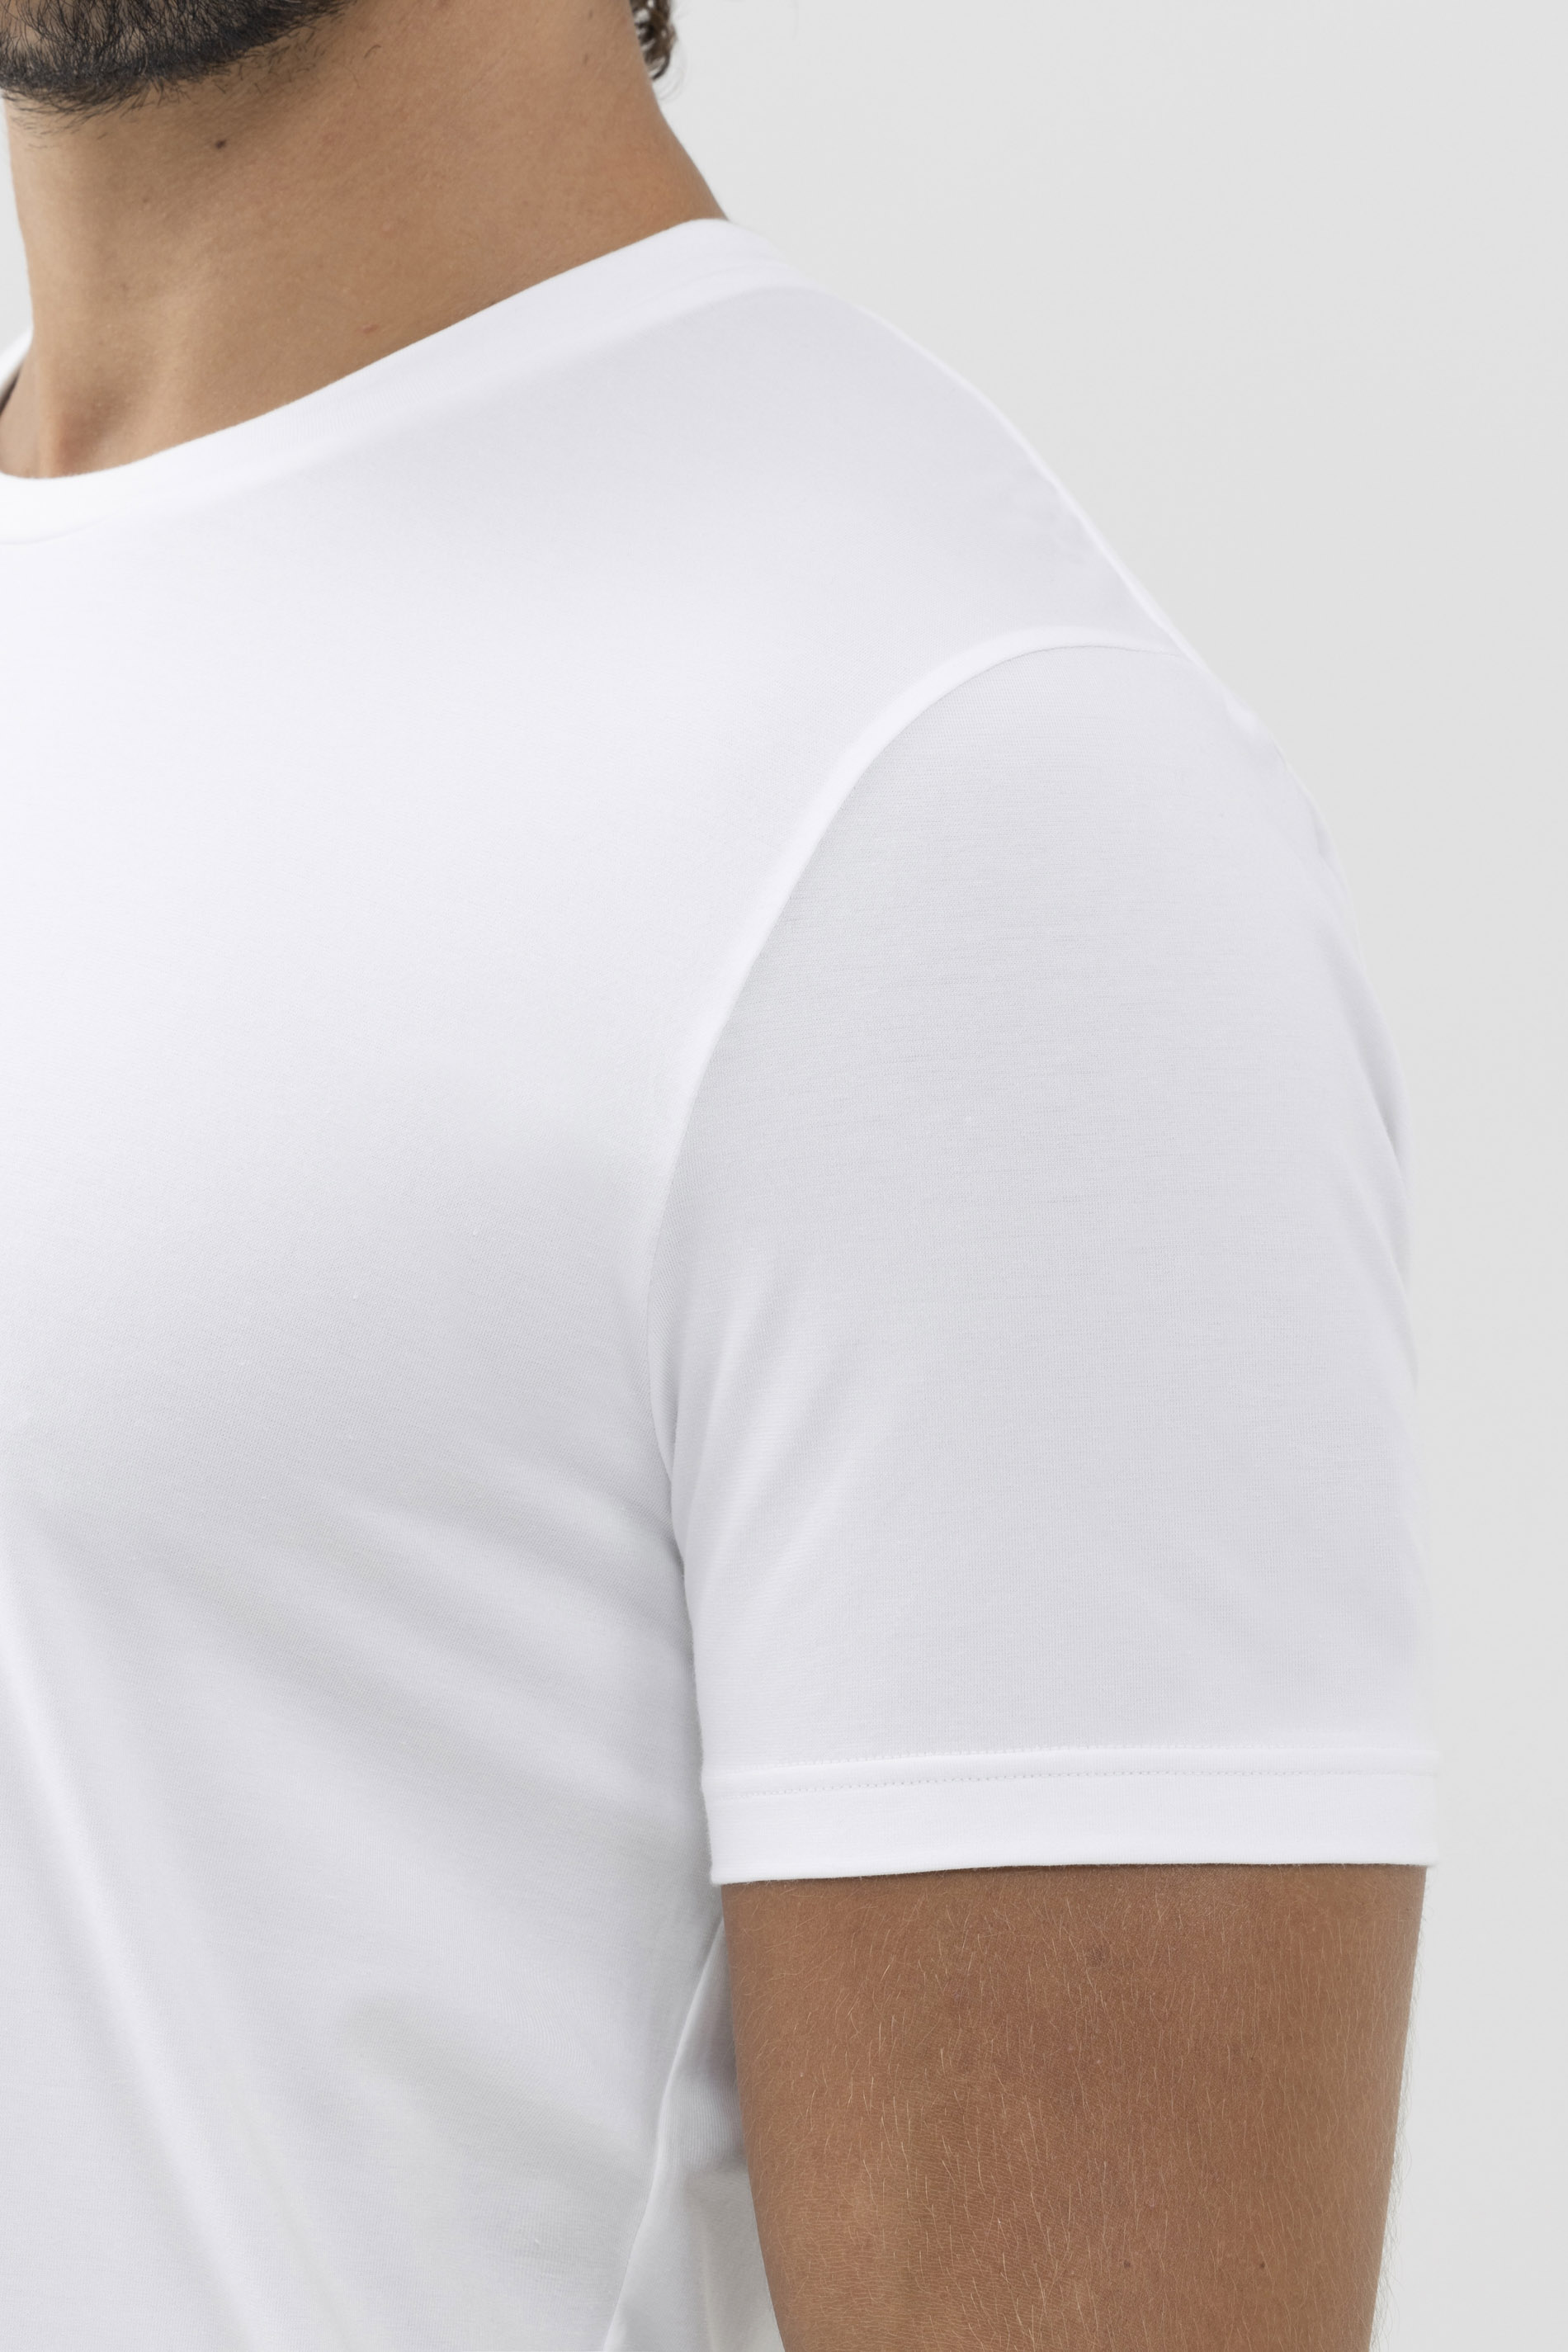 T-Shirt Dry Cotton Colour Detailansicht 02 | mey®